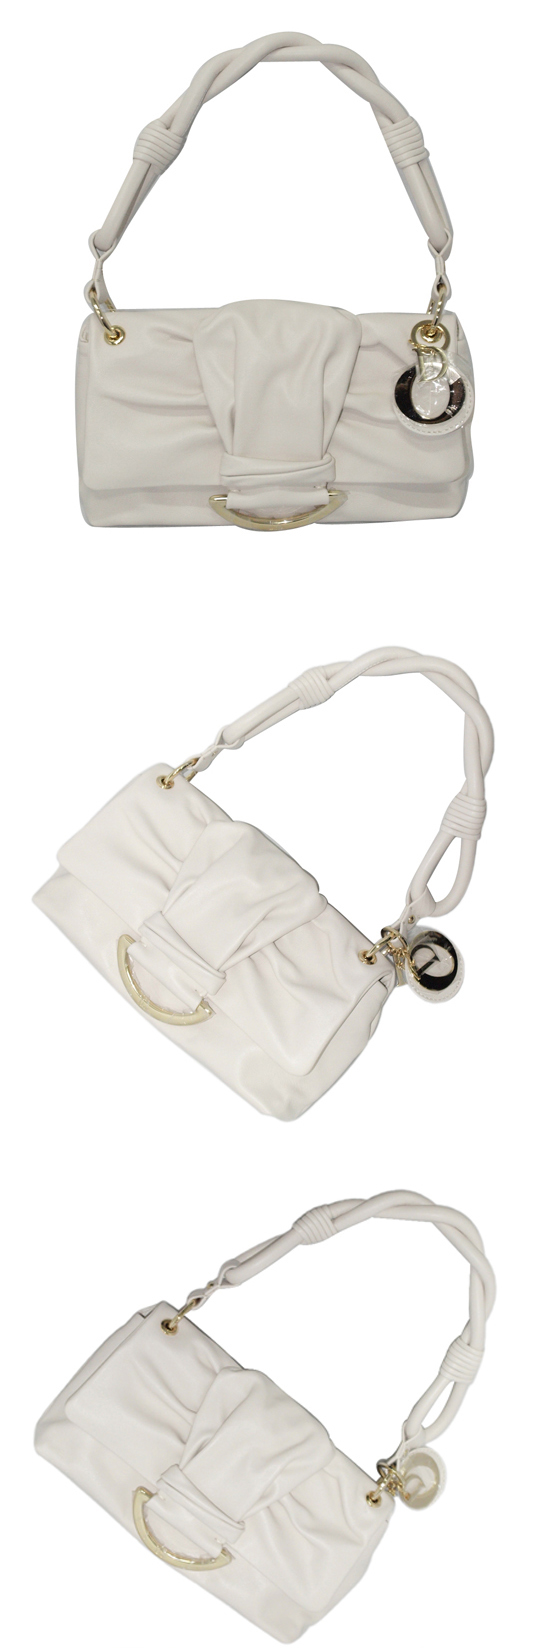 ブランド通販Dior-ディオール-bag-44580-white激安屋-ブランドコピー